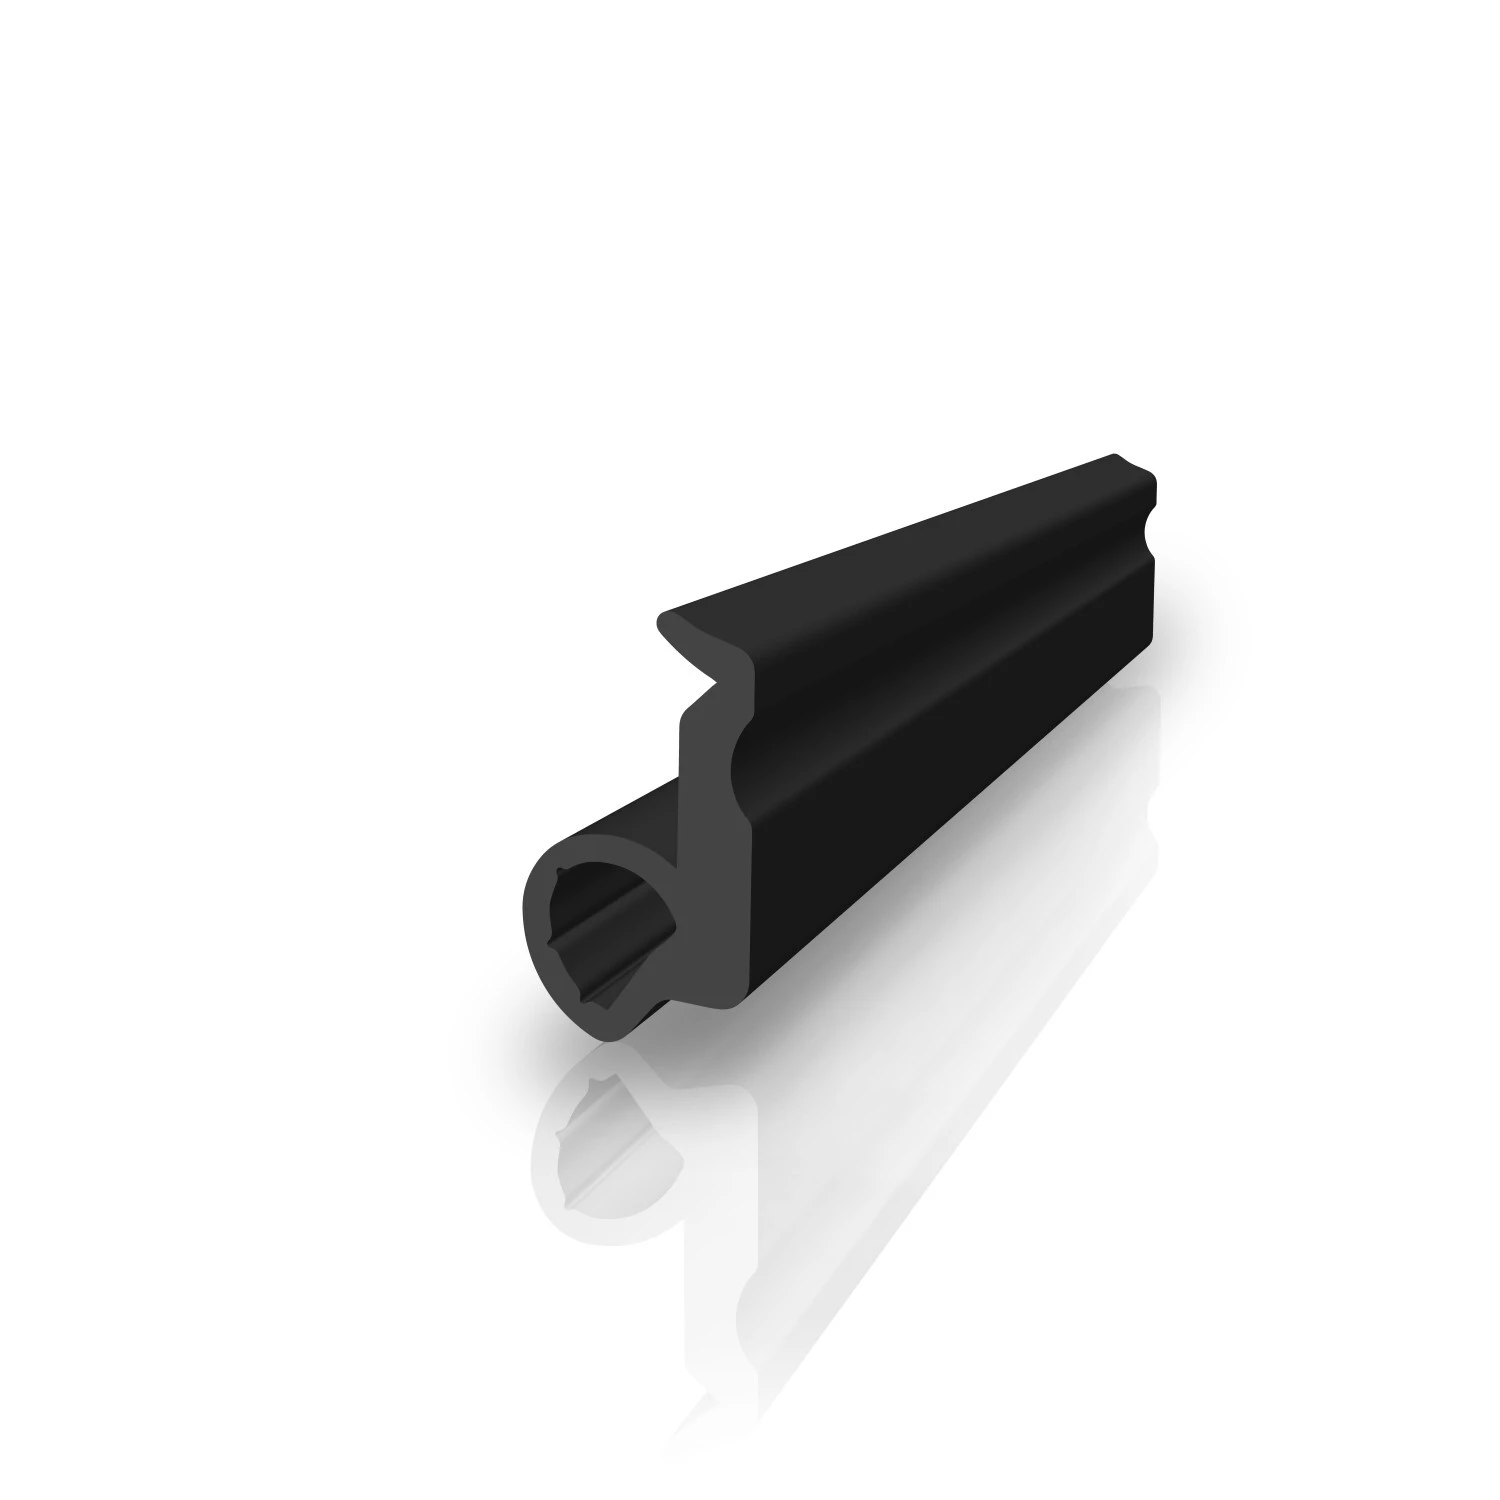 Mitteldichtung für Alu- oder Metallfenster | 22 mm Höhe | Farbe: schwarz 